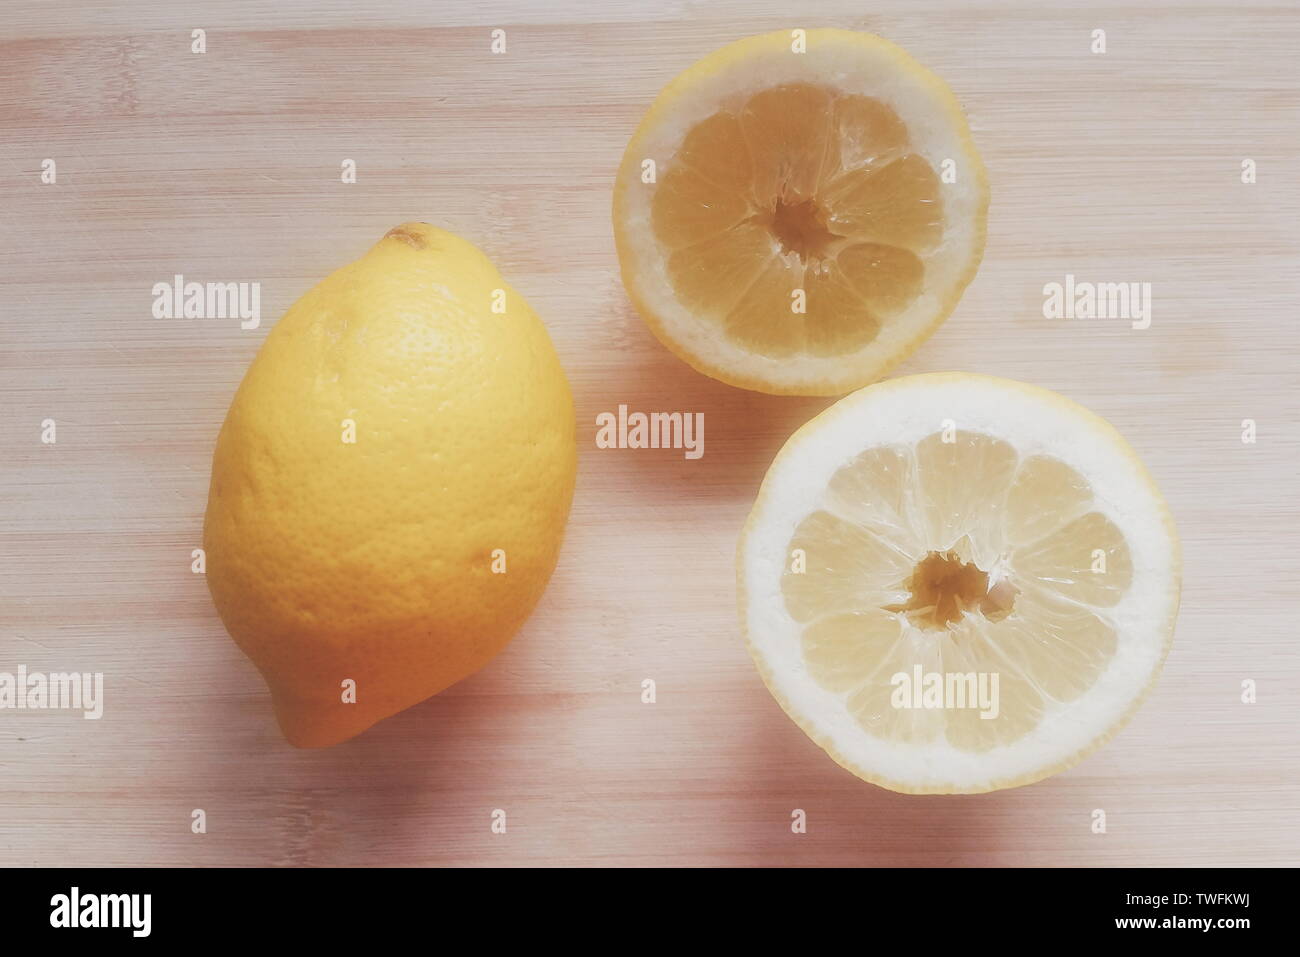 Vue aérienne de citrons frais Banque D'Images